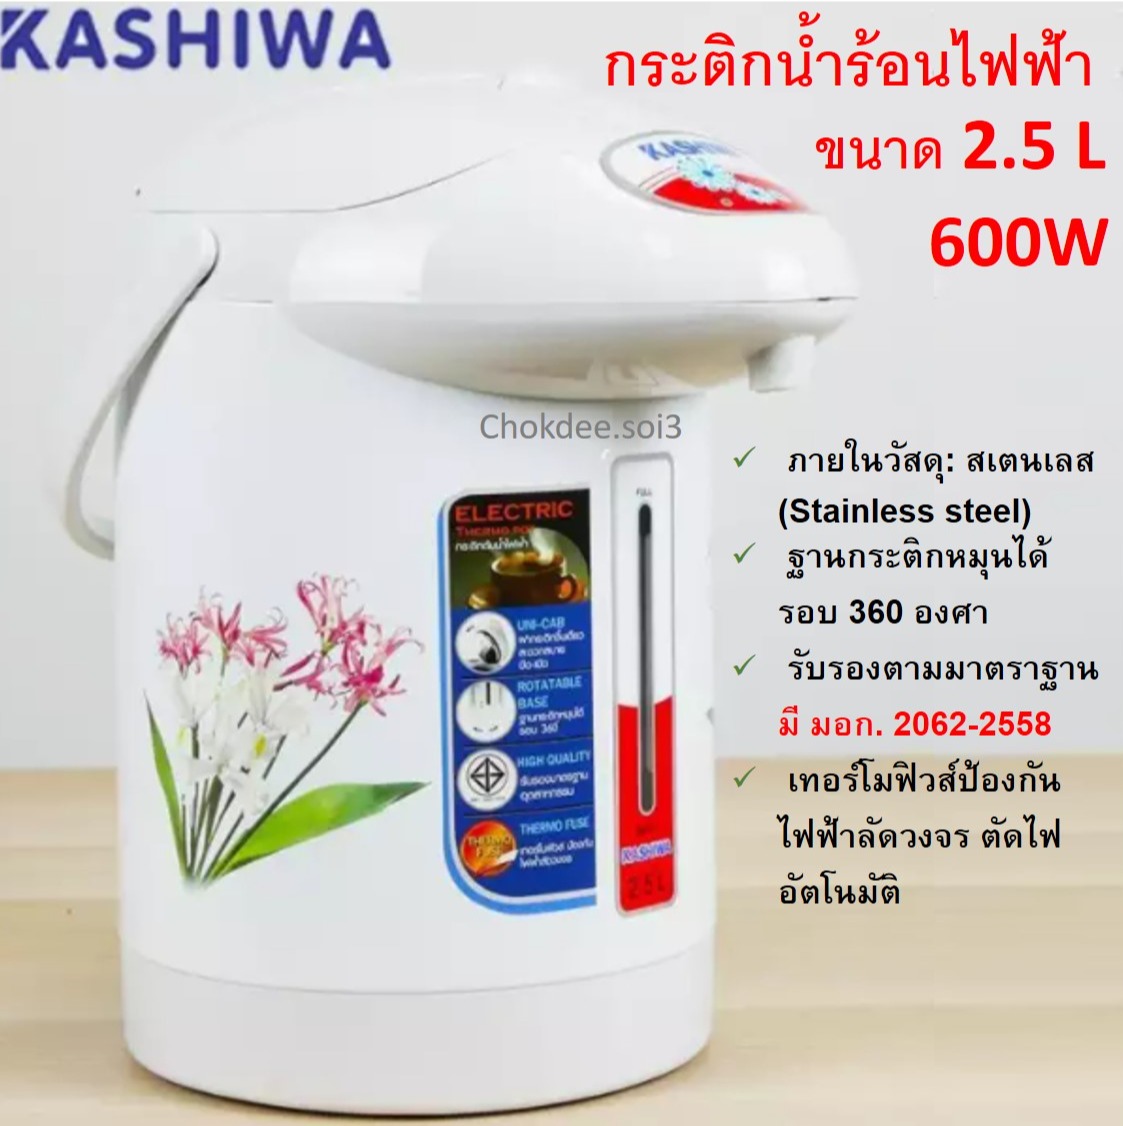 KASHIWA KT-287 กระติกน้ำร้อนไฟฟ้า 2.5 ลิตร 600 วัตต์ (ขายคละลาย คละสี) กาน้ำร้อนไฟฟ้า กาต้มน้ำไฟฟ้า KASHIWA Electric Jar Pot เทอร์โมฟิวส์ป้องกันไฟฟ้าลัดวงจร